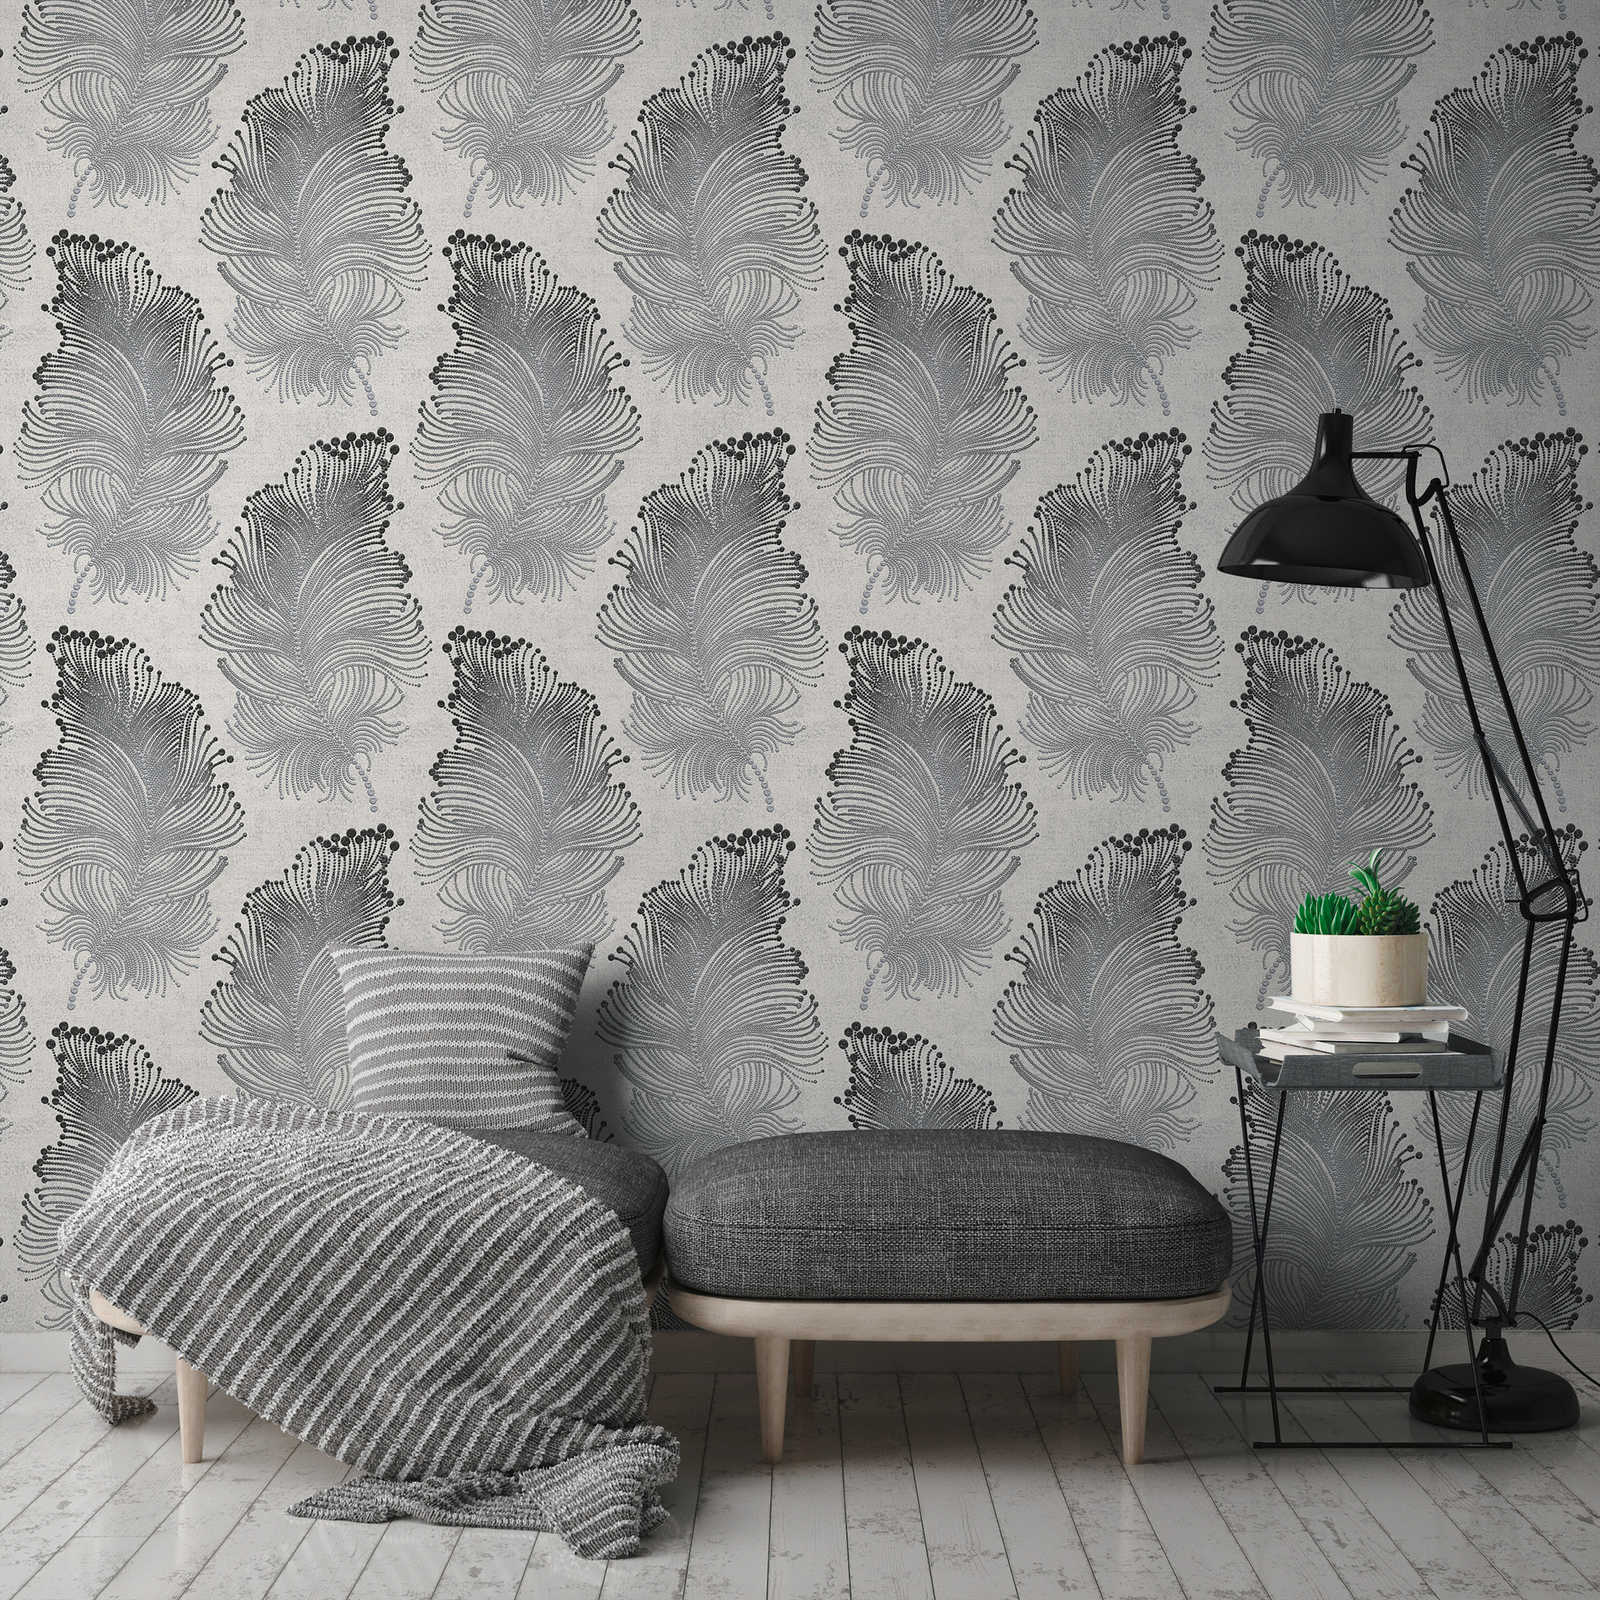             Metallic wallpaper with feather motif in boho style - metallic, white
        